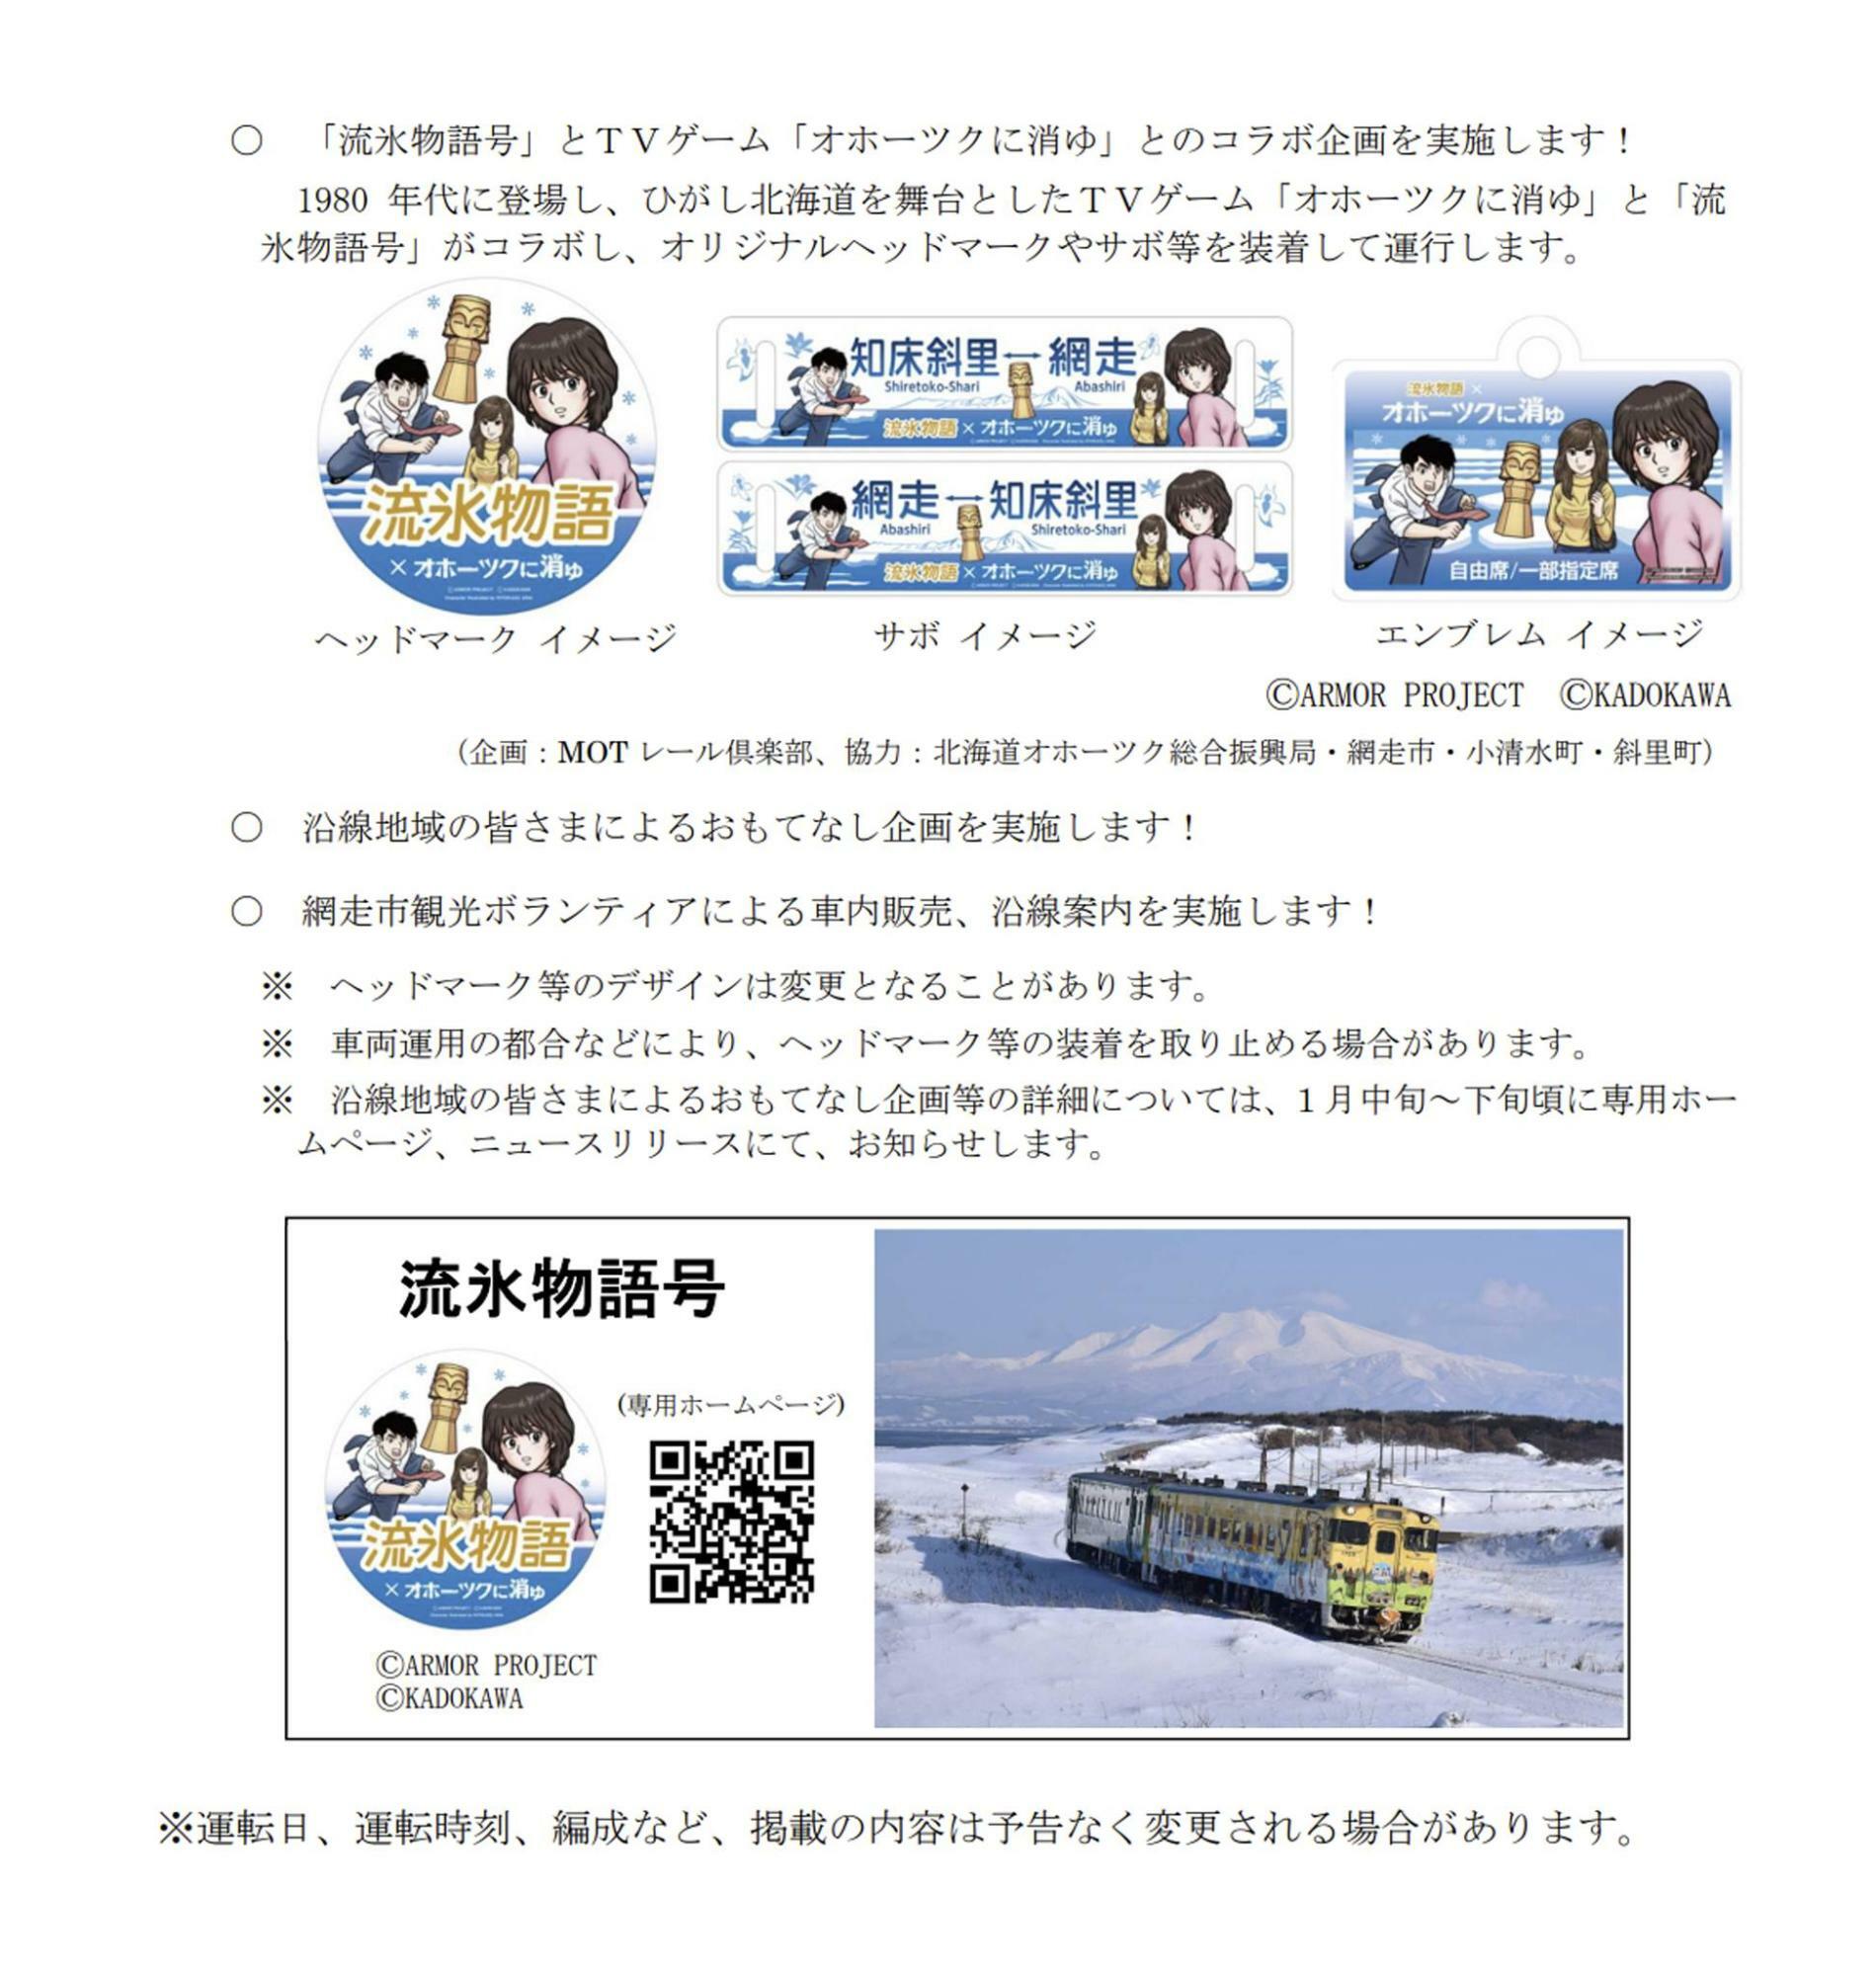 流氷物語号の詳細（JR北海道のホームページよ）